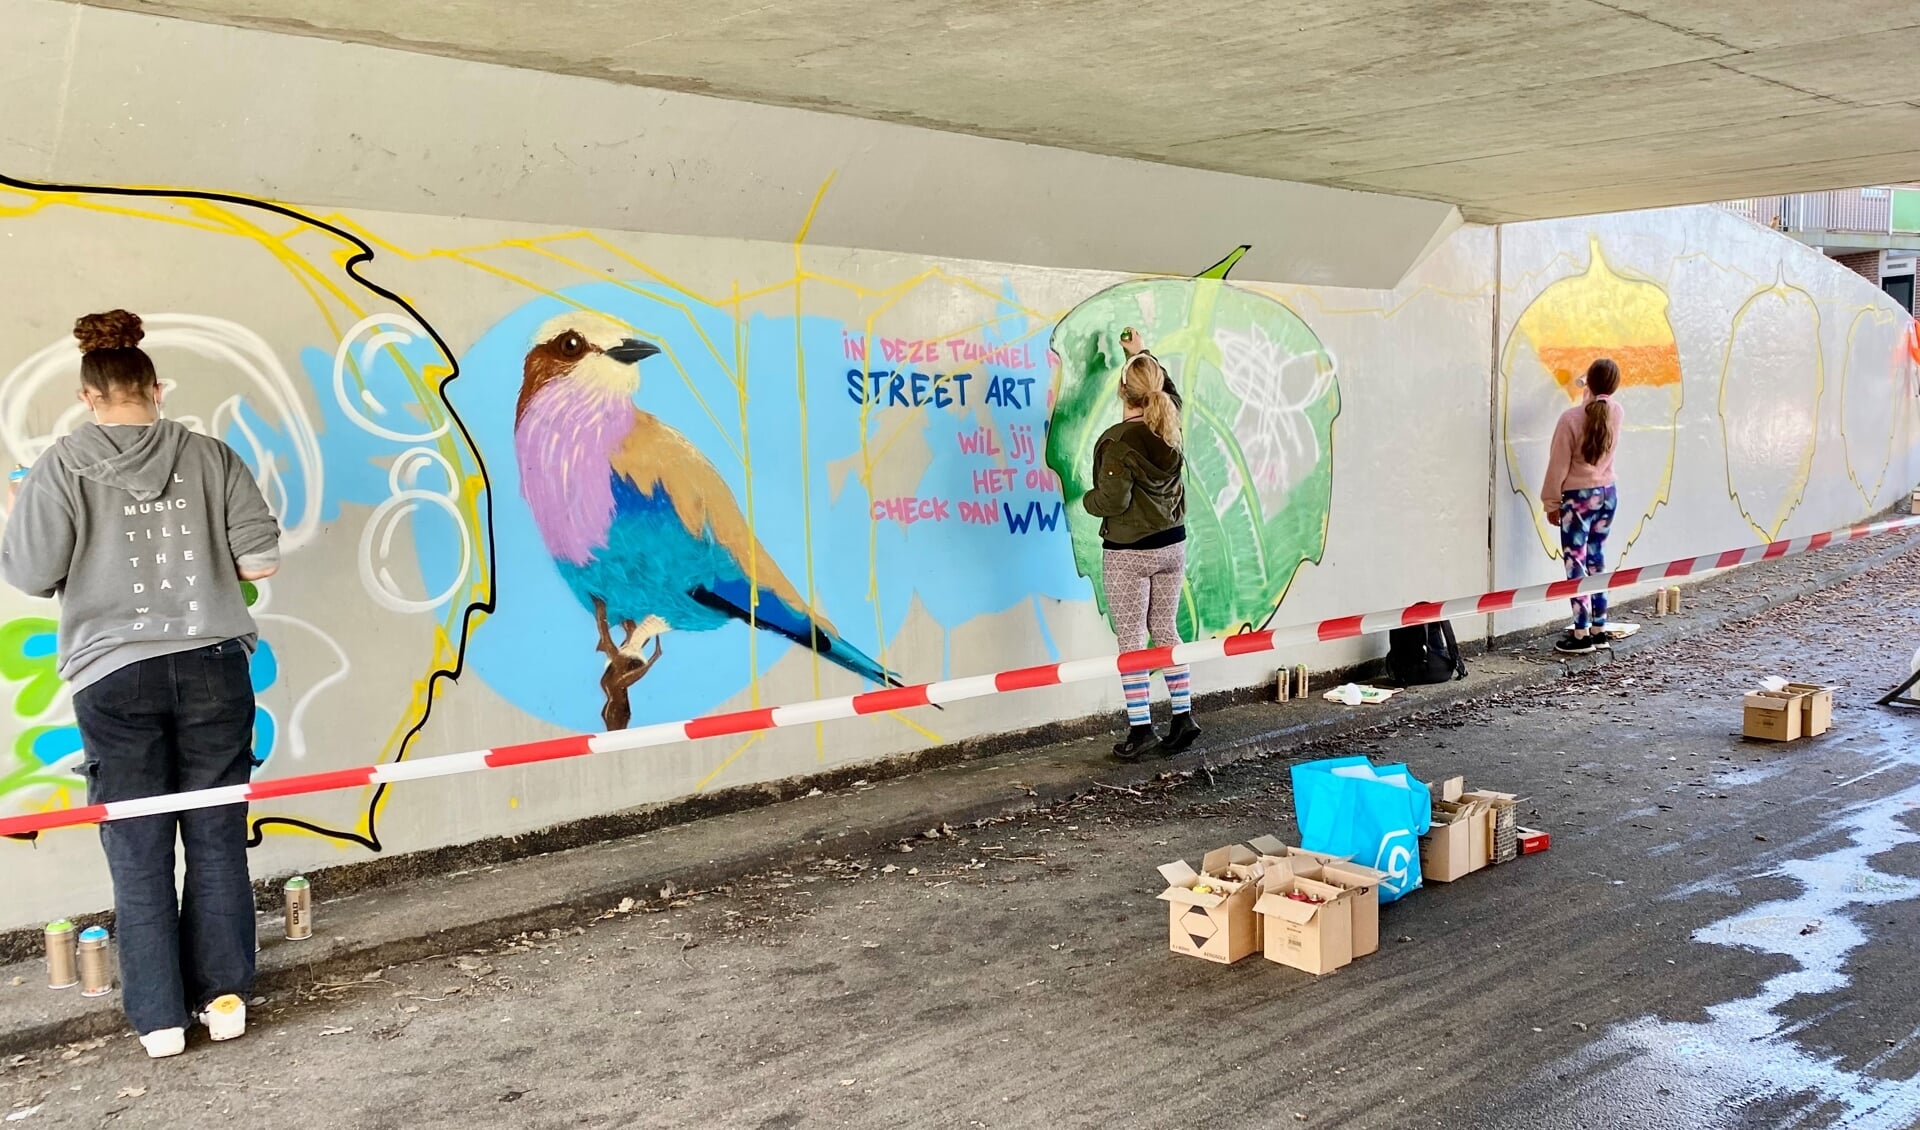 Almeerse jongeren hebben elk hun eigen kunstwerk aangebracht in de fietstunnel. (Foto: aangeleverd)